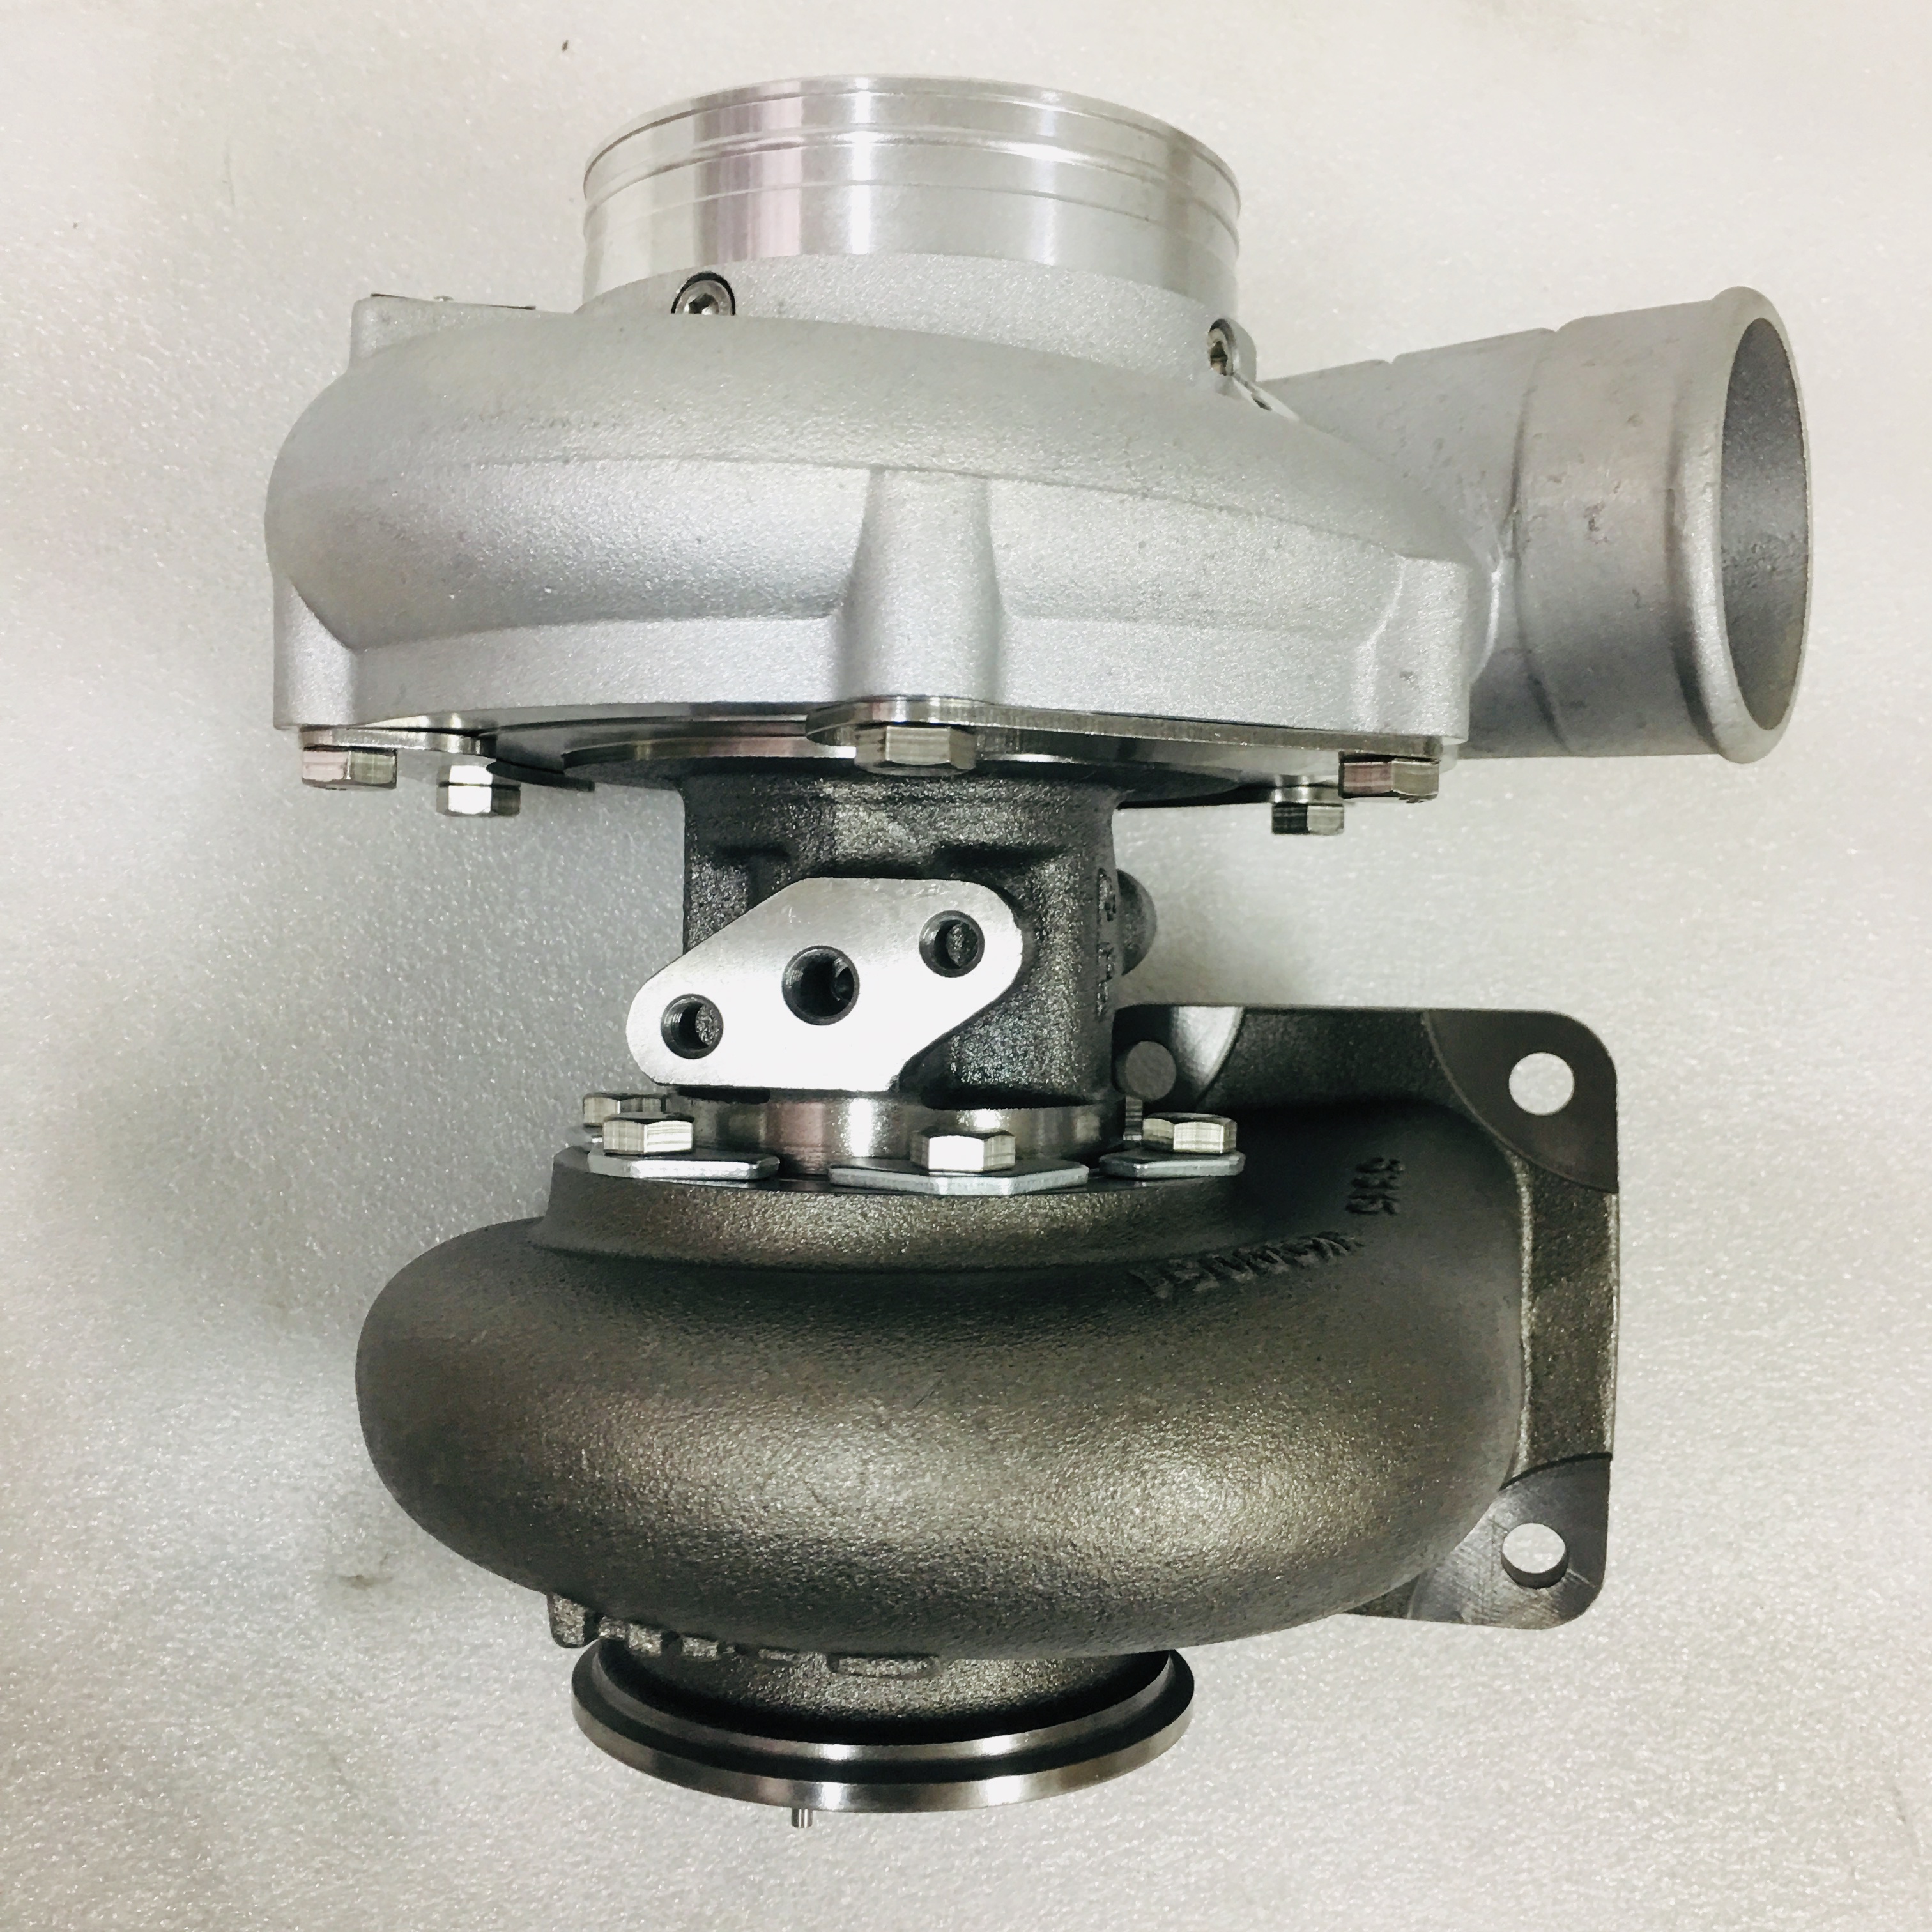 Turbocompressor especial para adaptação e atualização do rolamento de esferas HKS refrigerado a ar para melhorar o desempenho